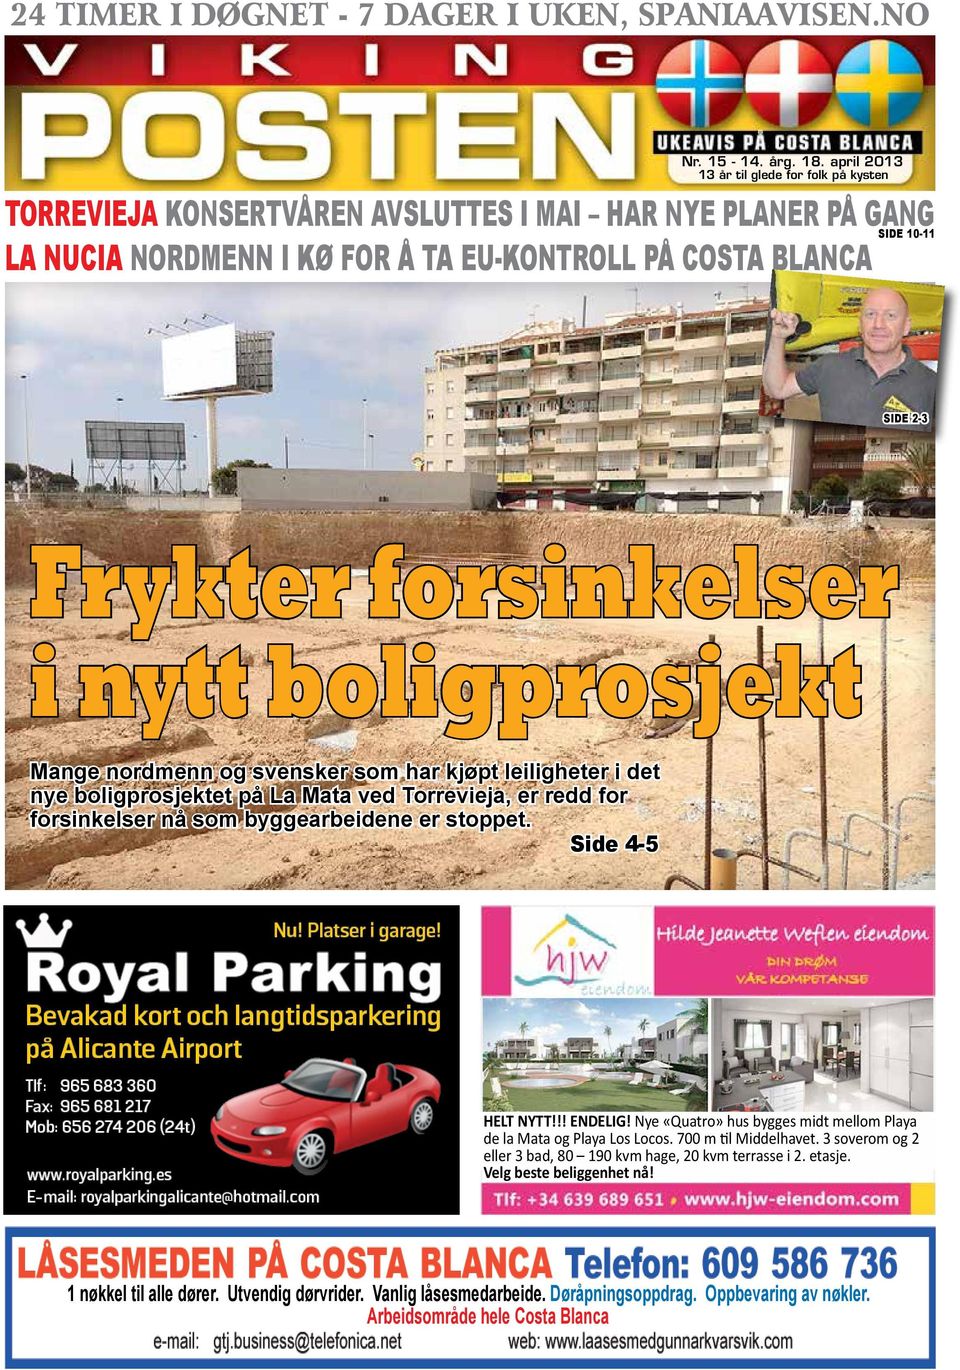 forsinkelser i nytt boligprosjekt Mange nordmenn og svensker som har kjøpt leiligheter i det nye boligprosjektet på La Mata ved Torrevieja, er redd for forsinkelser nå som byggearbeidene er stoppet.